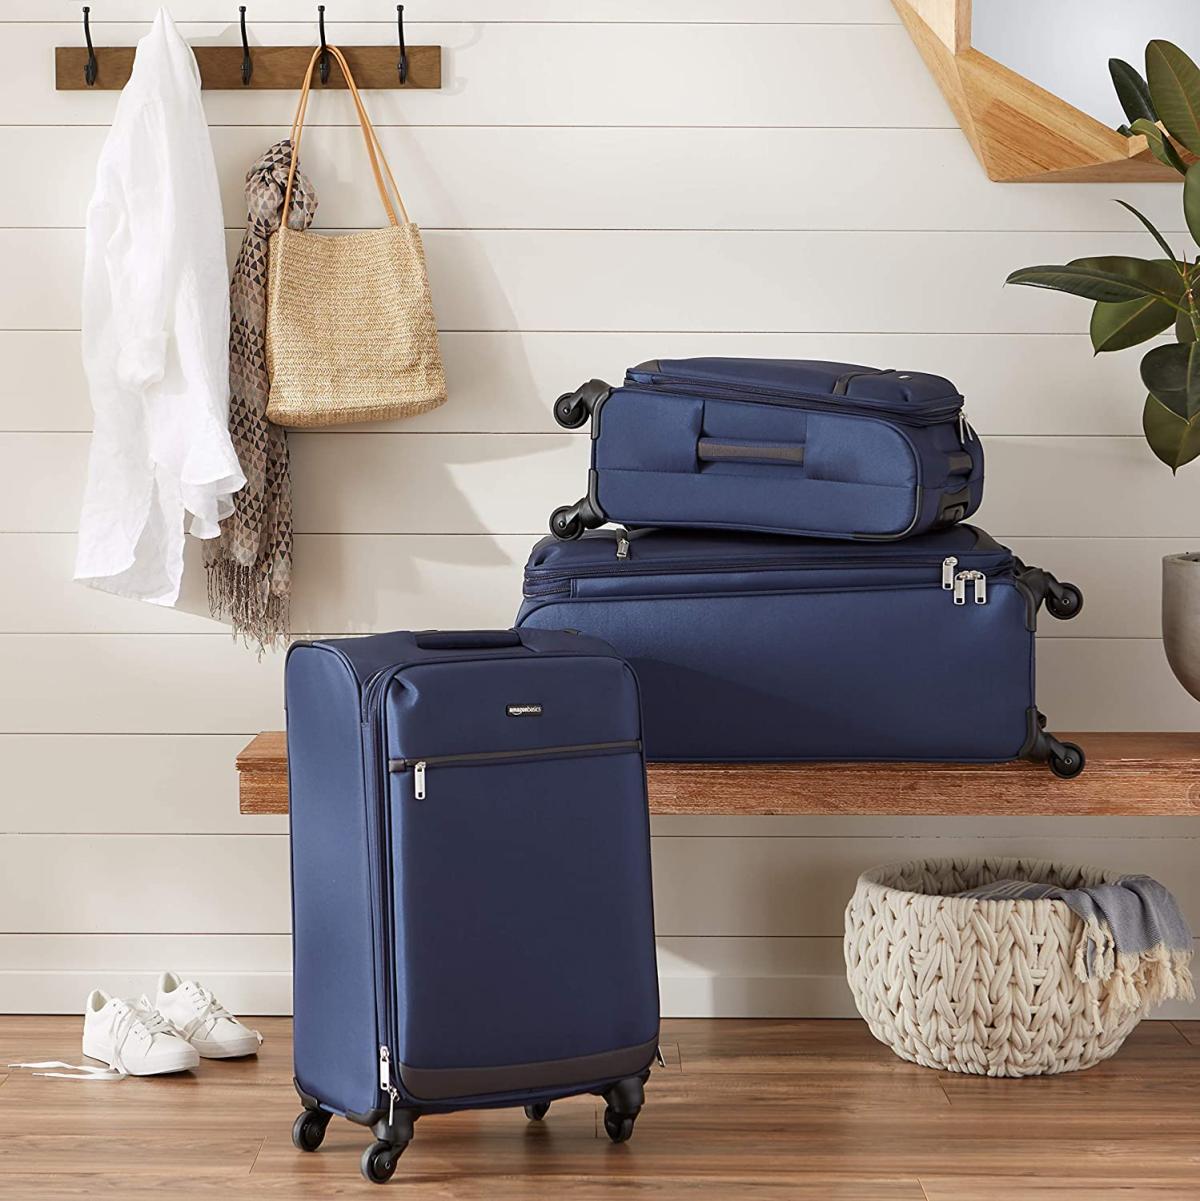 maletas y equipaje para viajar en oferta por el Prime Day 2020: desde 15 euros Autobild.es